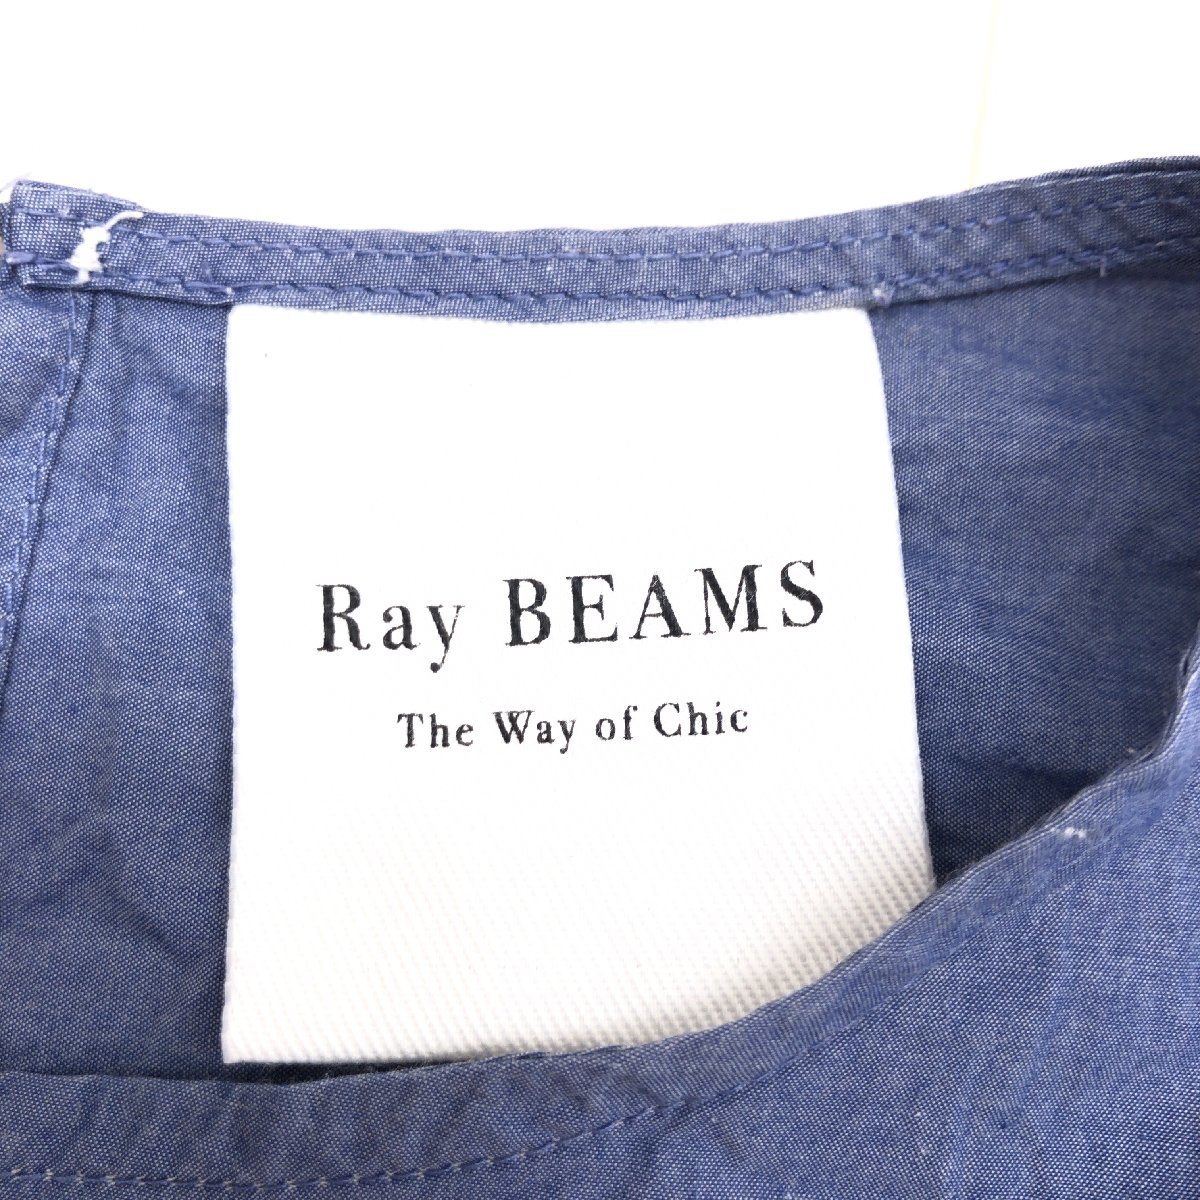 Ray BEAMS ビームス リボン装飾 プルオーバー カットソー M相当 紺系 ネイビー系 七分袖 シャツ ブラウス 国内正規品 レディース 女性用の画像3